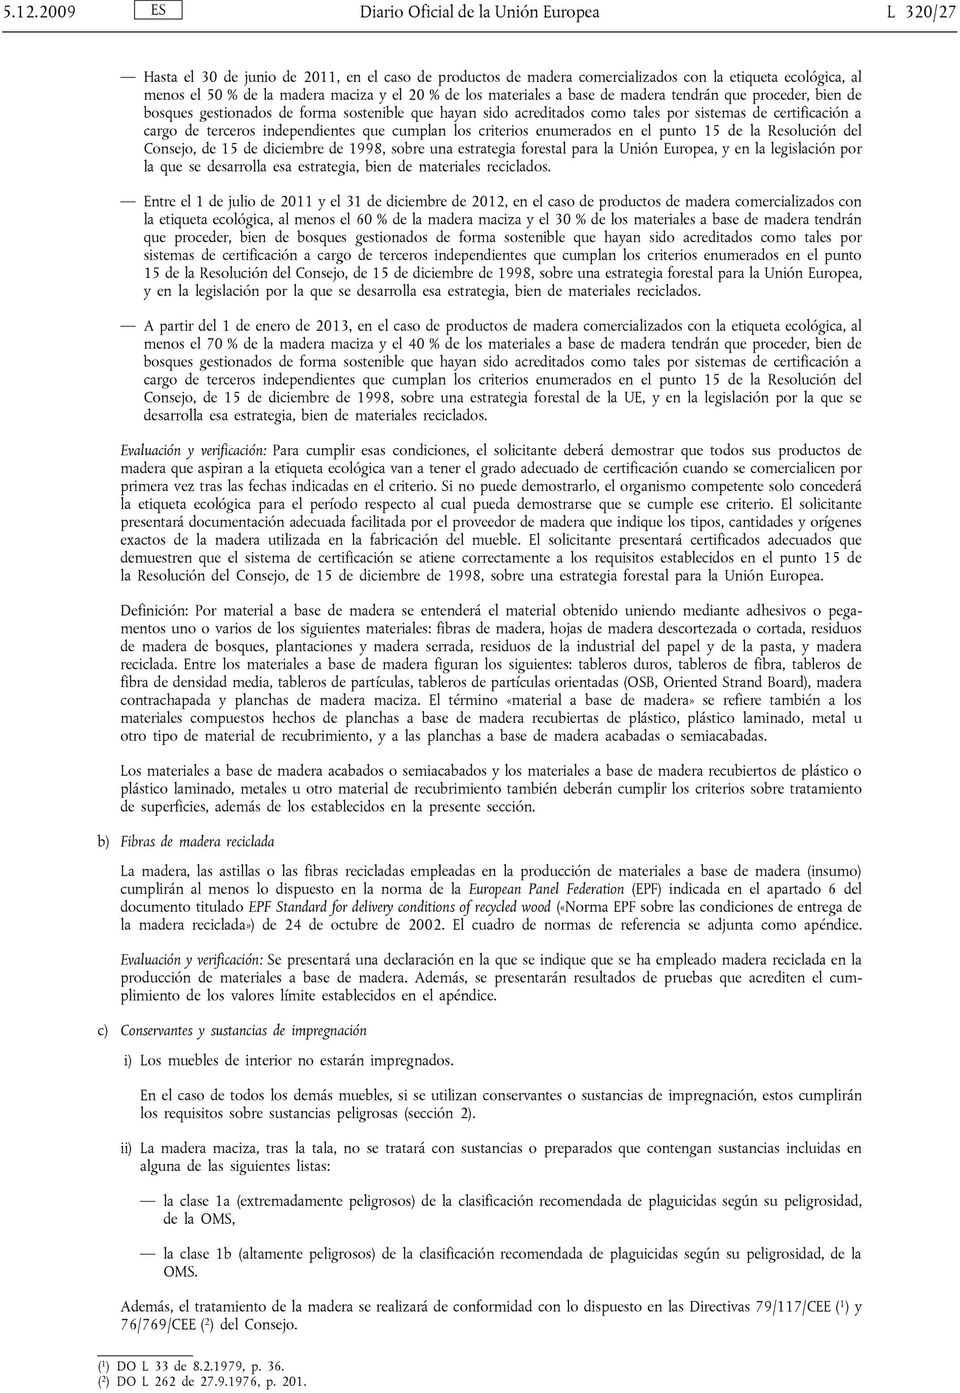 terceros independientes que cumplan los criterios enumerados en el punto 15 de la Resolución del Consejo, de 15 de diciembre de 1998, sobre una estrategia forestal para la Unión Europea, y en la